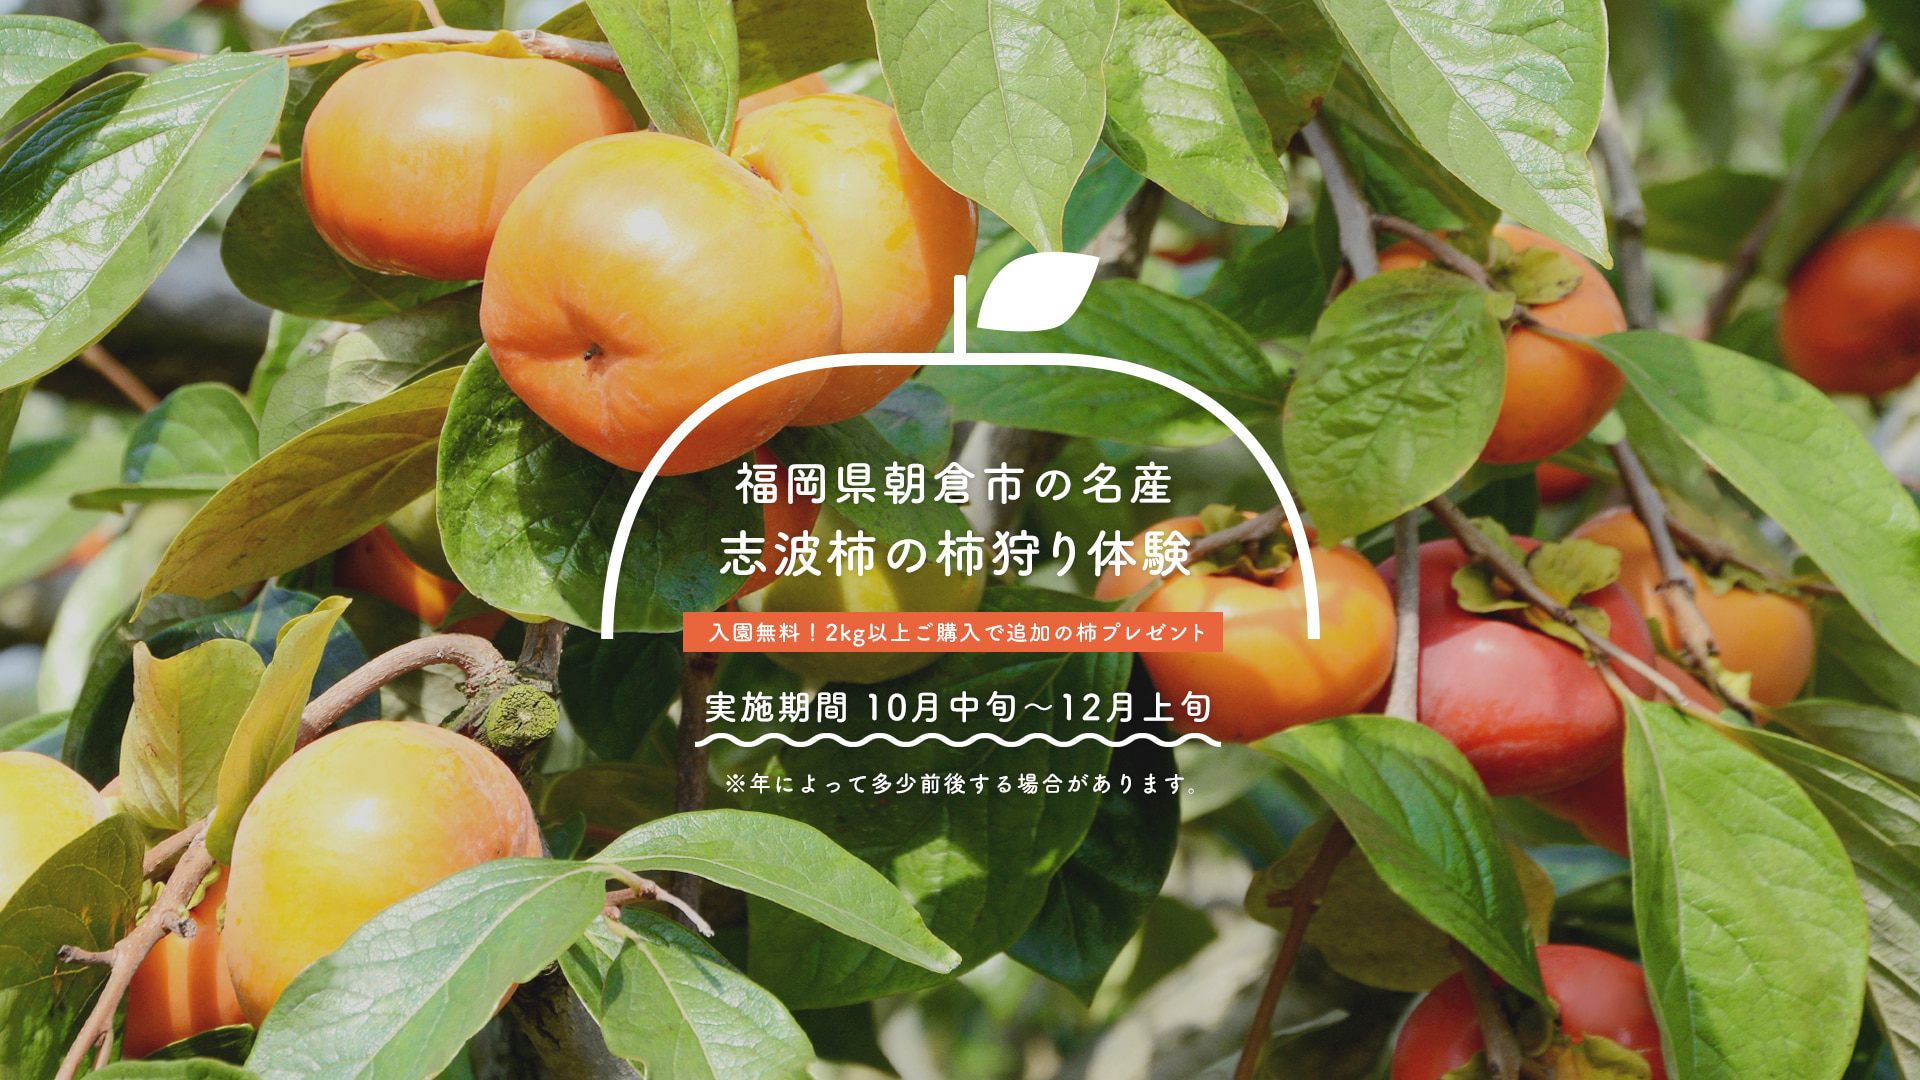 福岡県朝倉市の名産 志波柿の柿狩り体験 入園無料！2kg以上ご購入で追加の柿プレゼント 実施期間 10月中旬～12月上旬 ※年によって多少前後する場合があります。